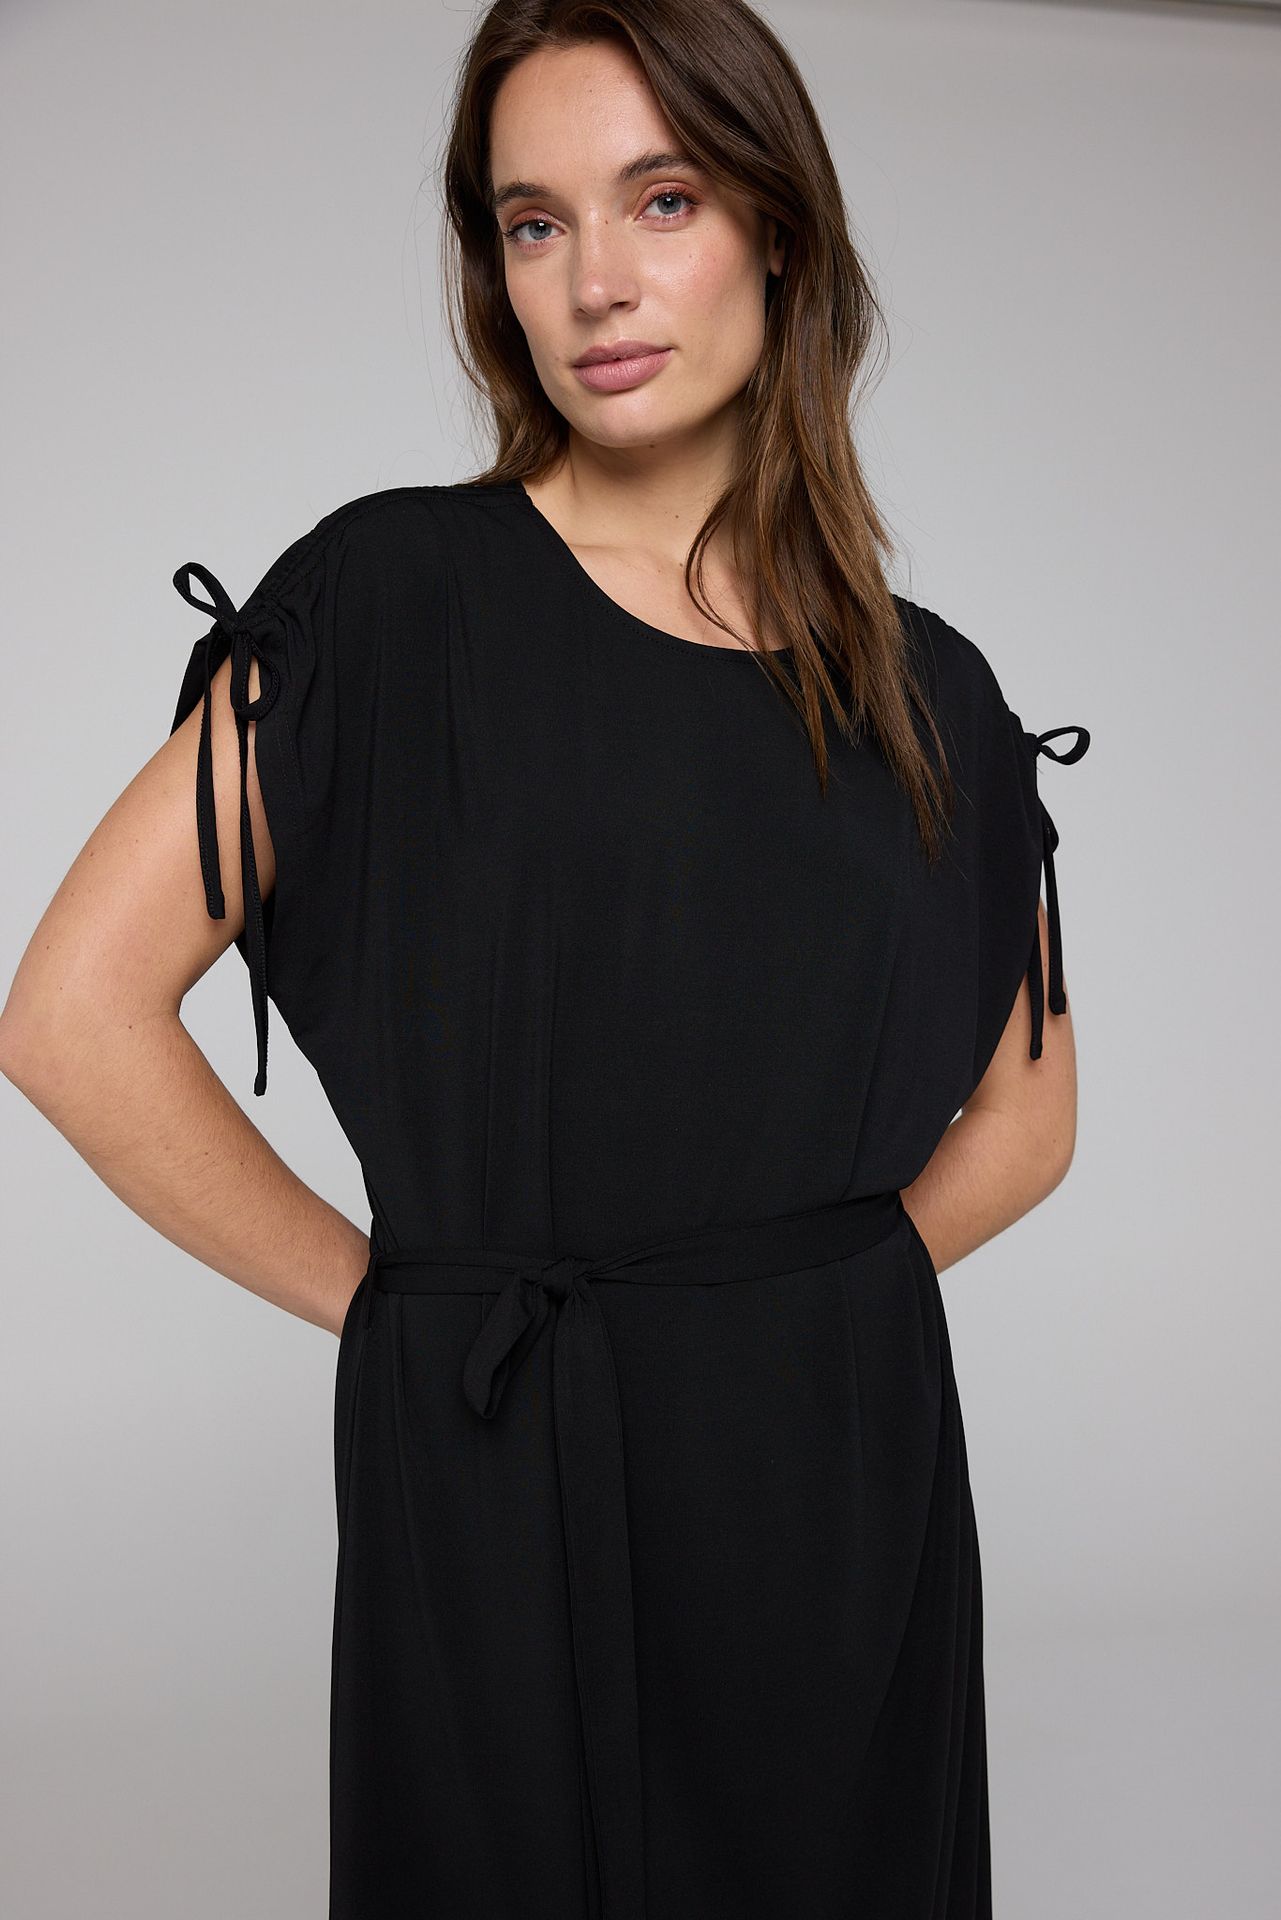 Norah Midi jurk zwart met koordjes black 212719-001